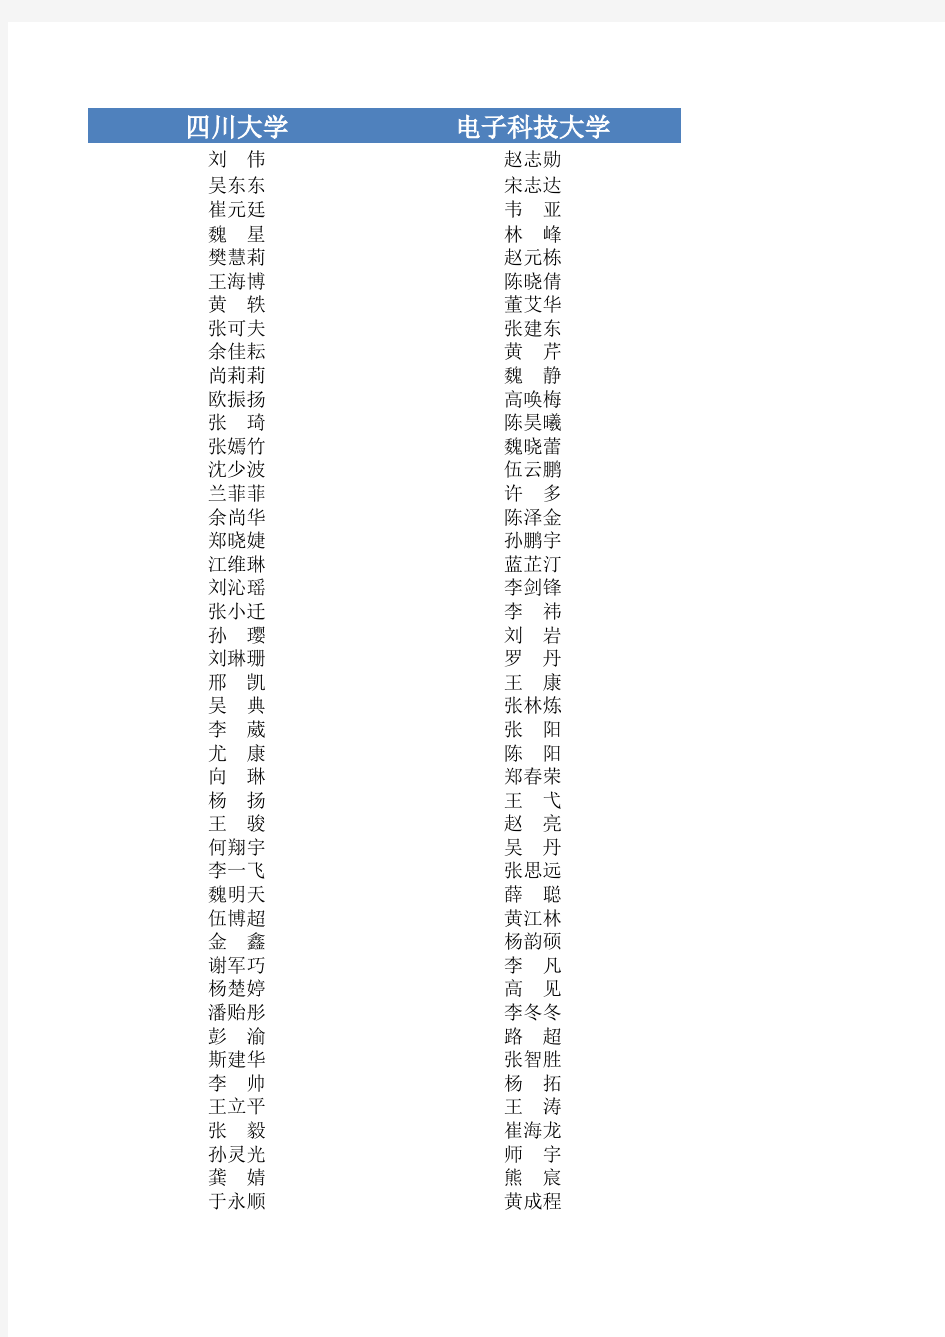 2011年四川省大学生“综合素质A级证书”认证通过人员名单汇总